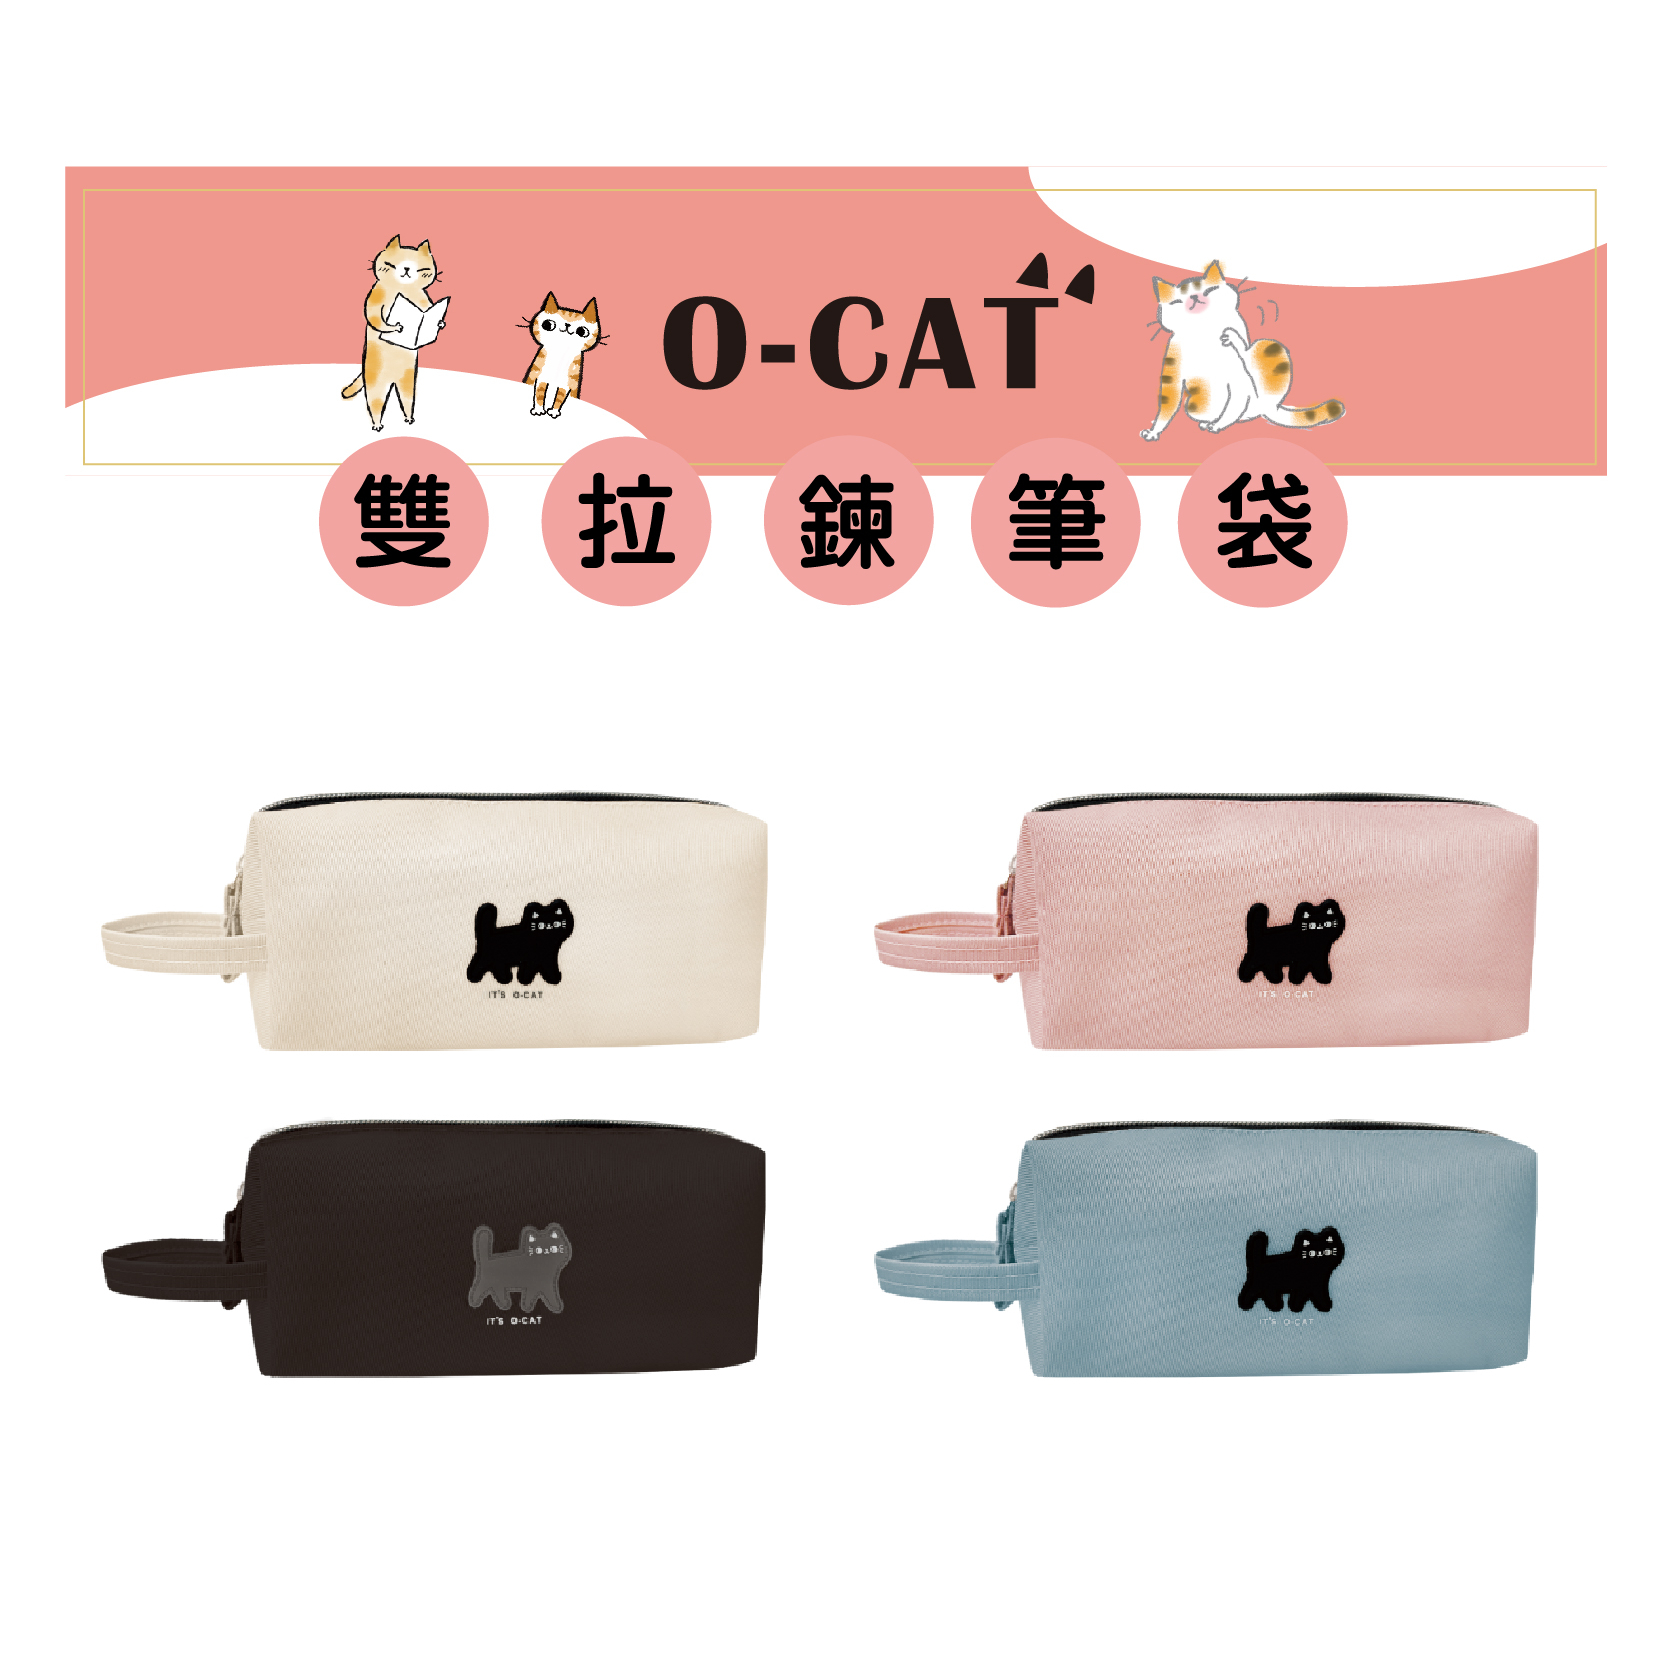 【九達】O-CAT 貓咪雙拉鍊筆袋 4款任選 前後雙層 分類超方便 學生必備款 JPC-140